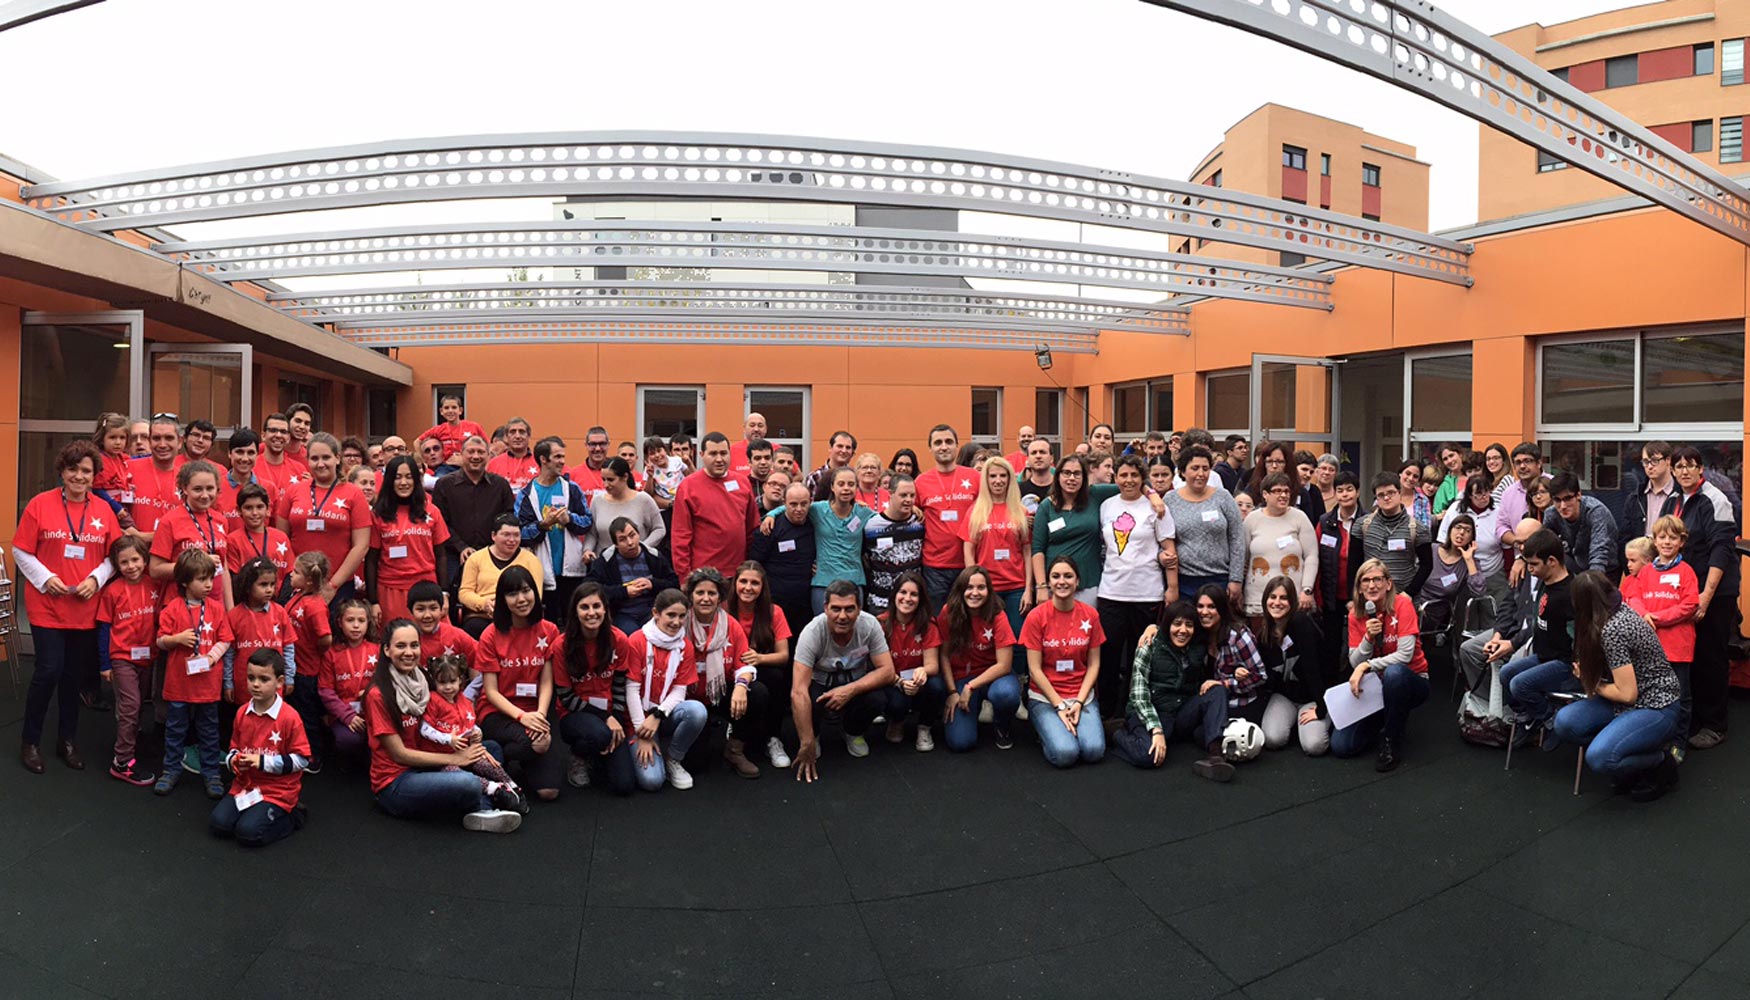 Empleados voluntarios de Linde Solidaria en la fiesta de Barcelona, organizada en el centro Arc de Sant Mart de Martorell...